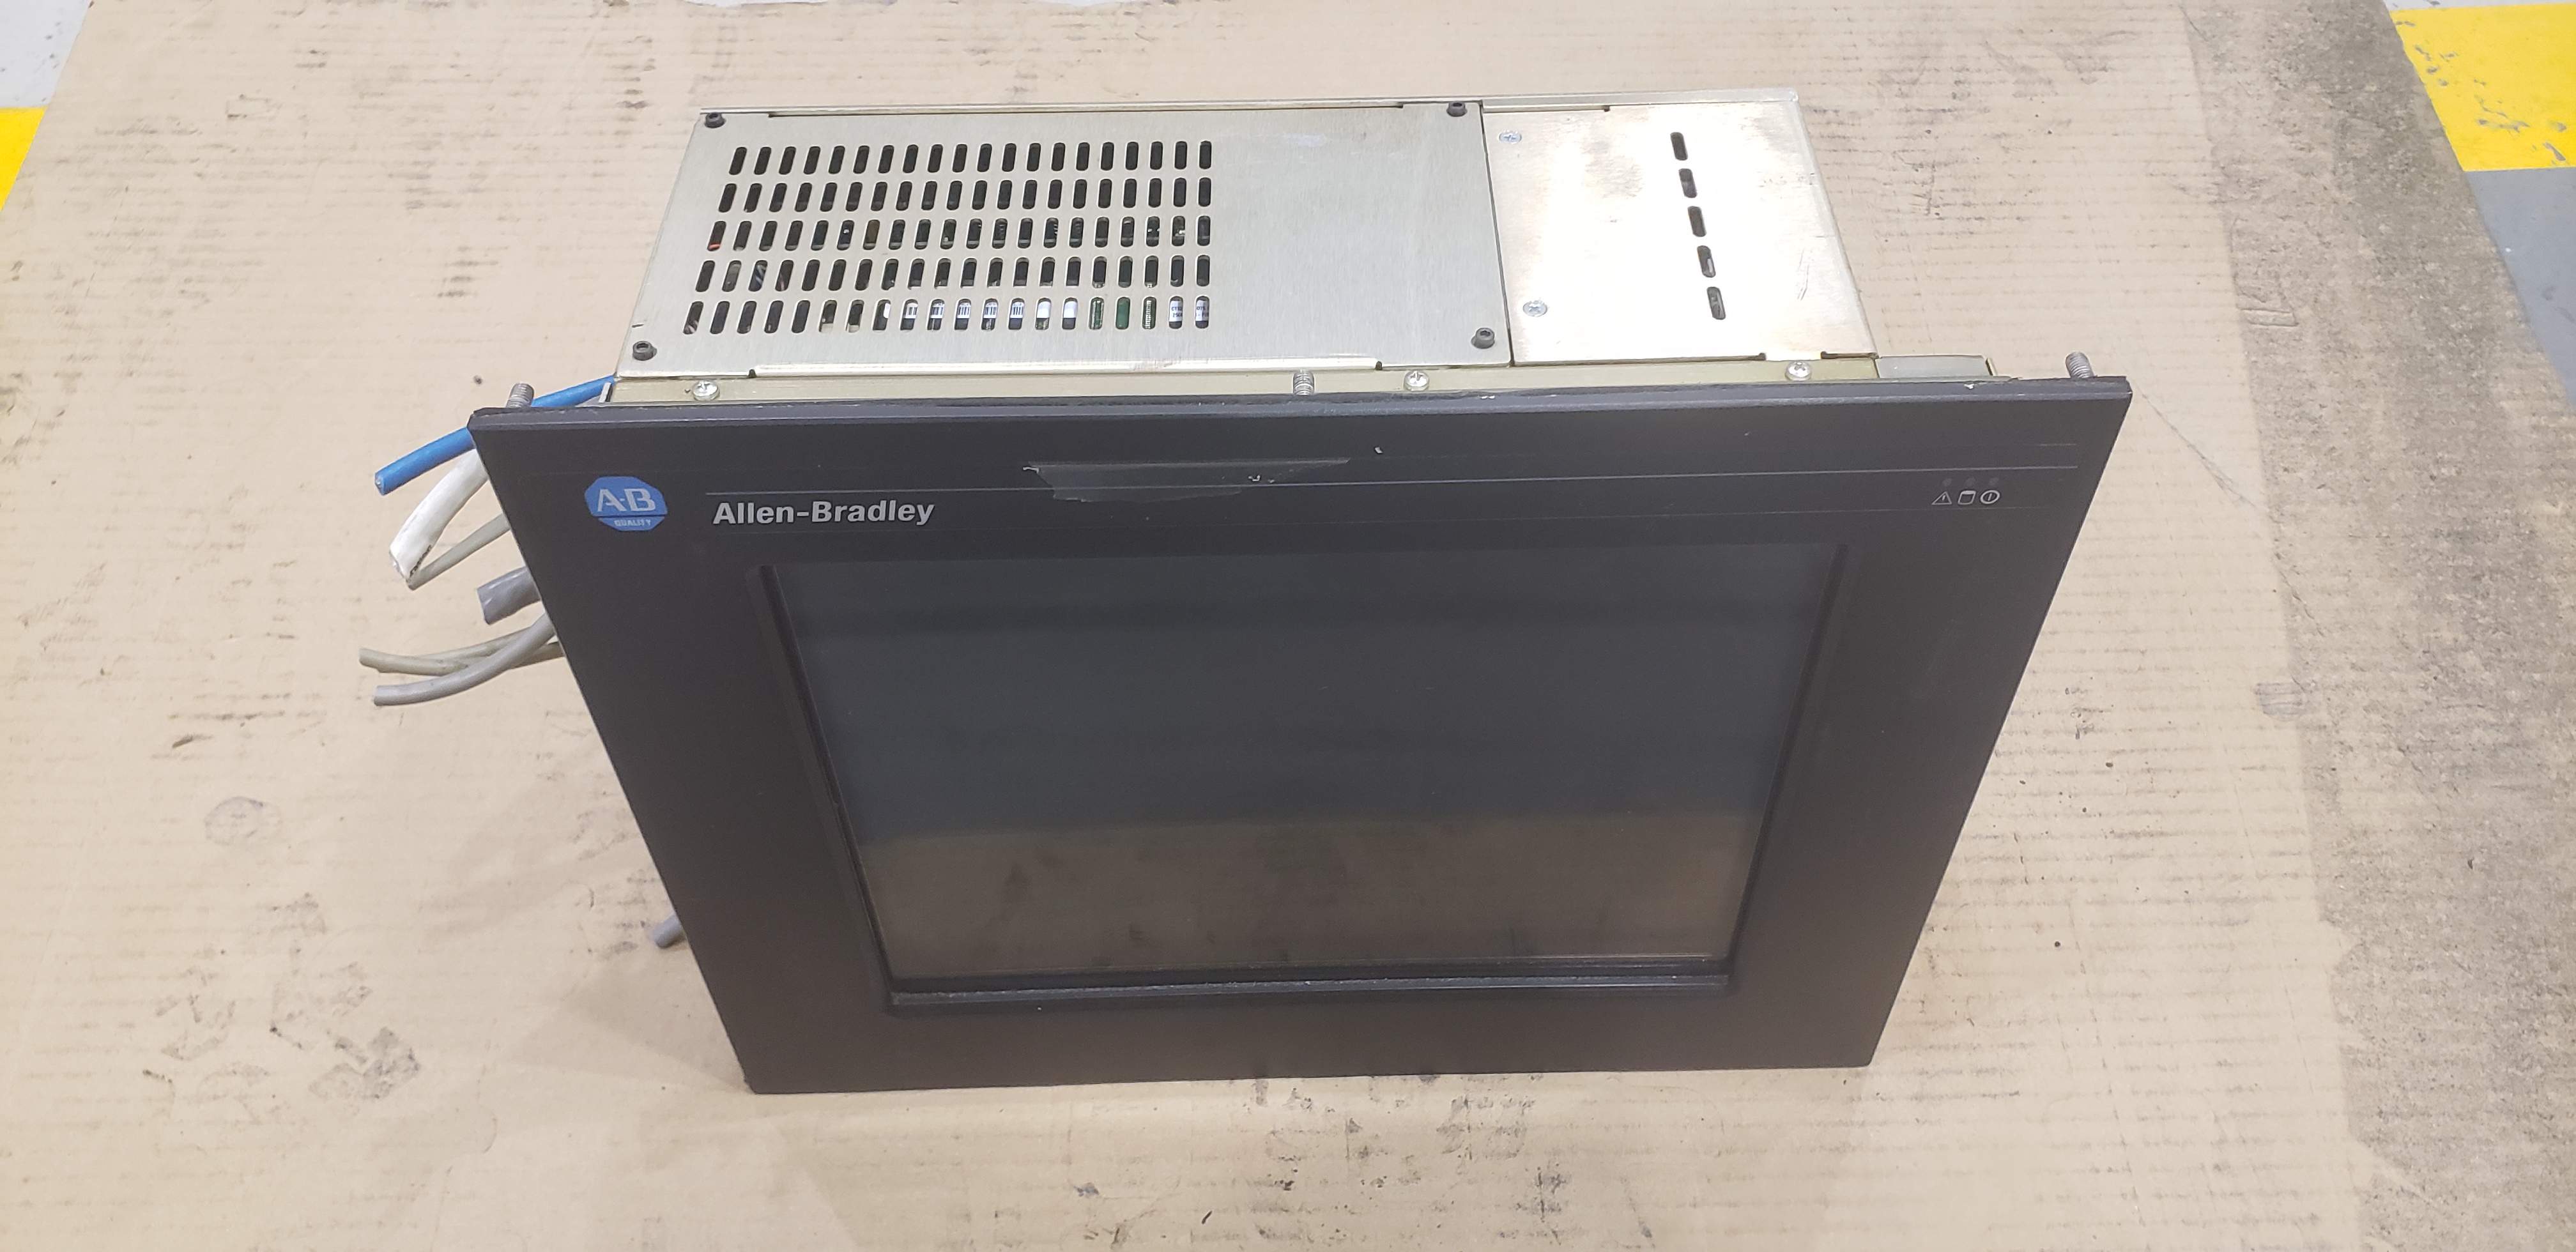 Allen-Bradley Display Panel / Computer